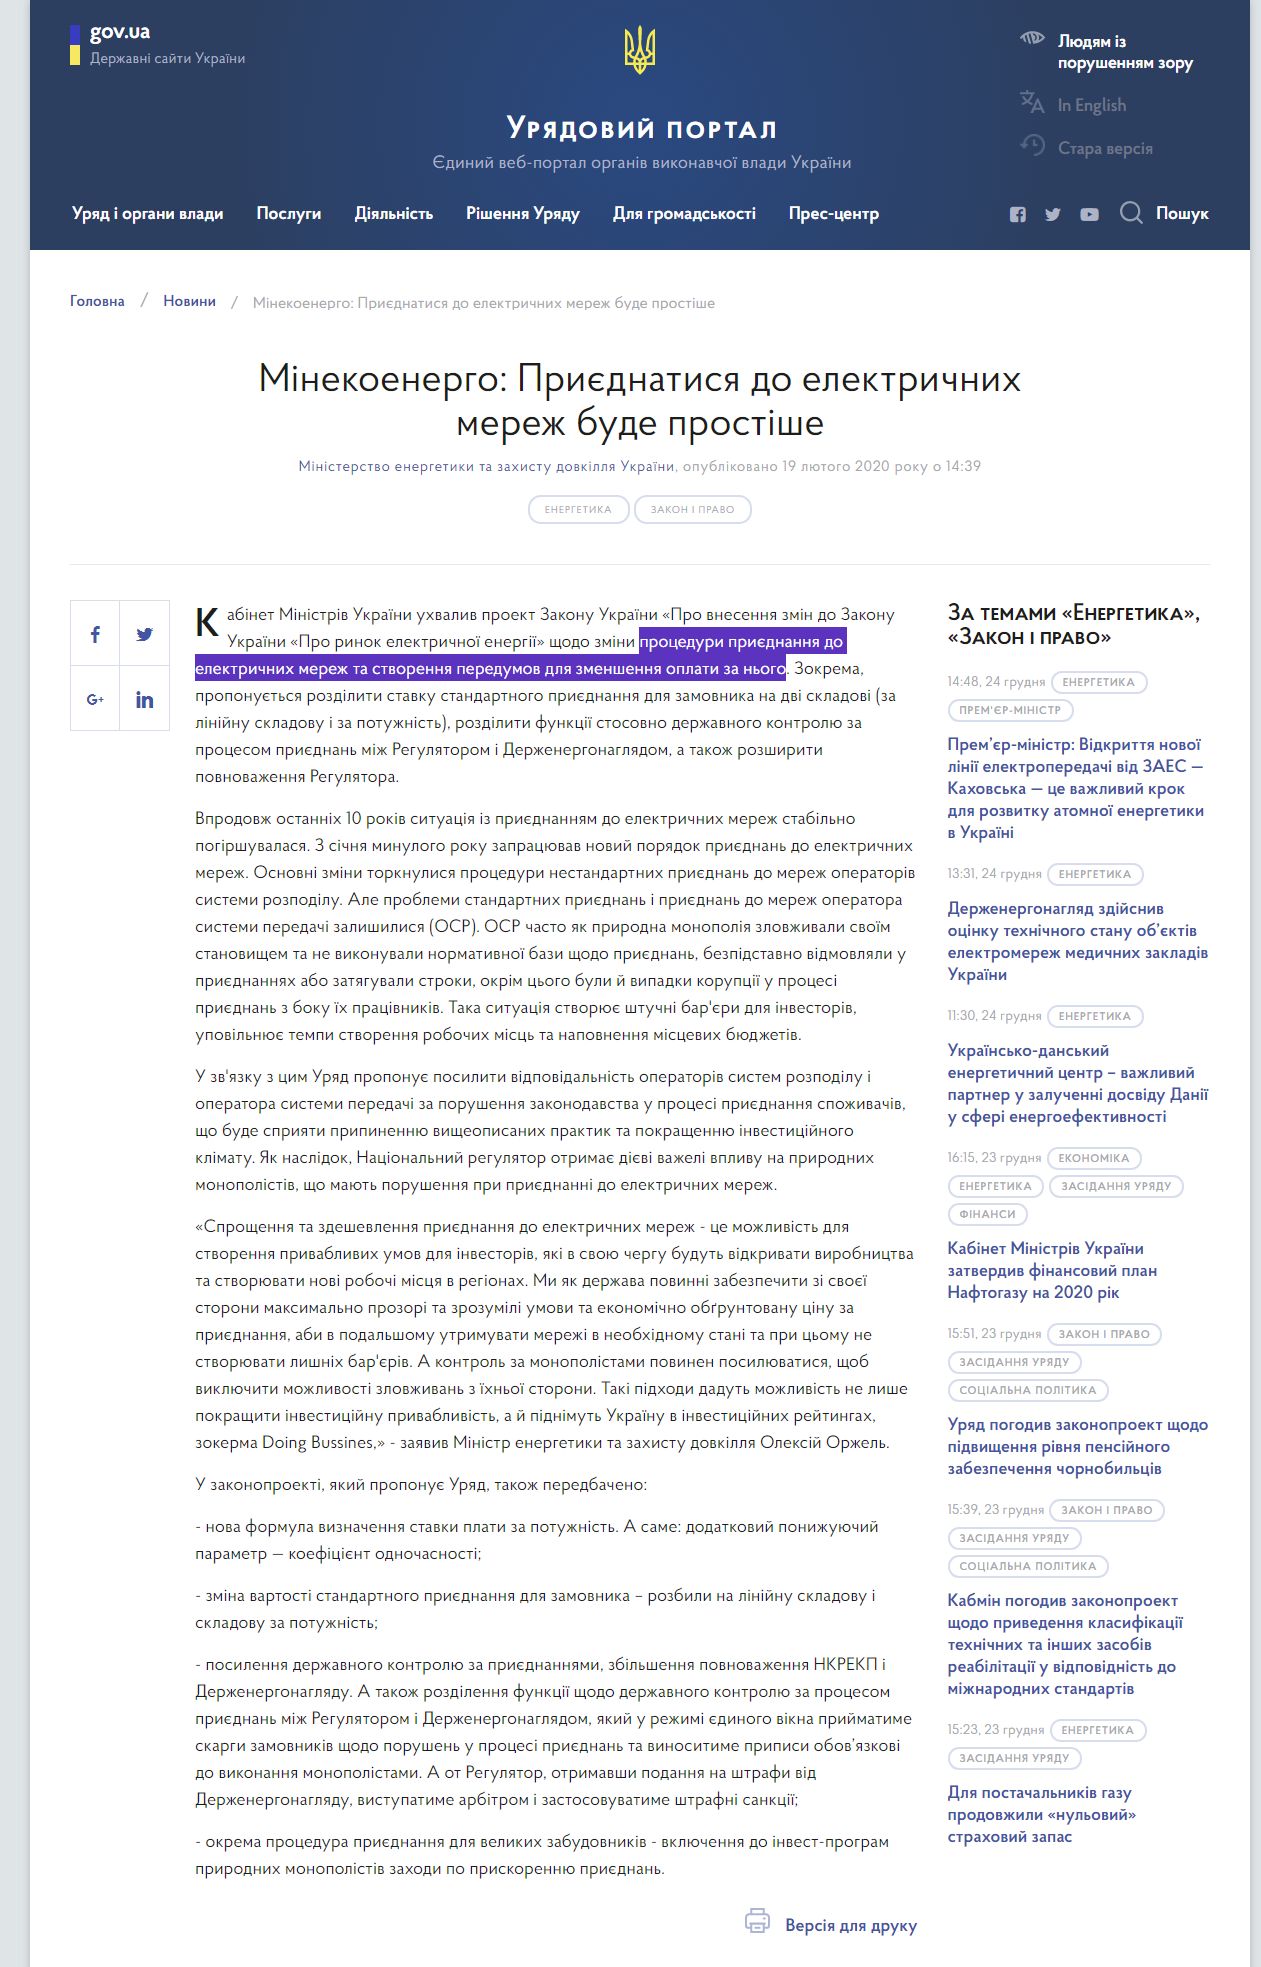 https://www.kmu.gov.ua/news/minekoenergo-priyednatisya-do-elektrichnih-merezh-bude-prostishe